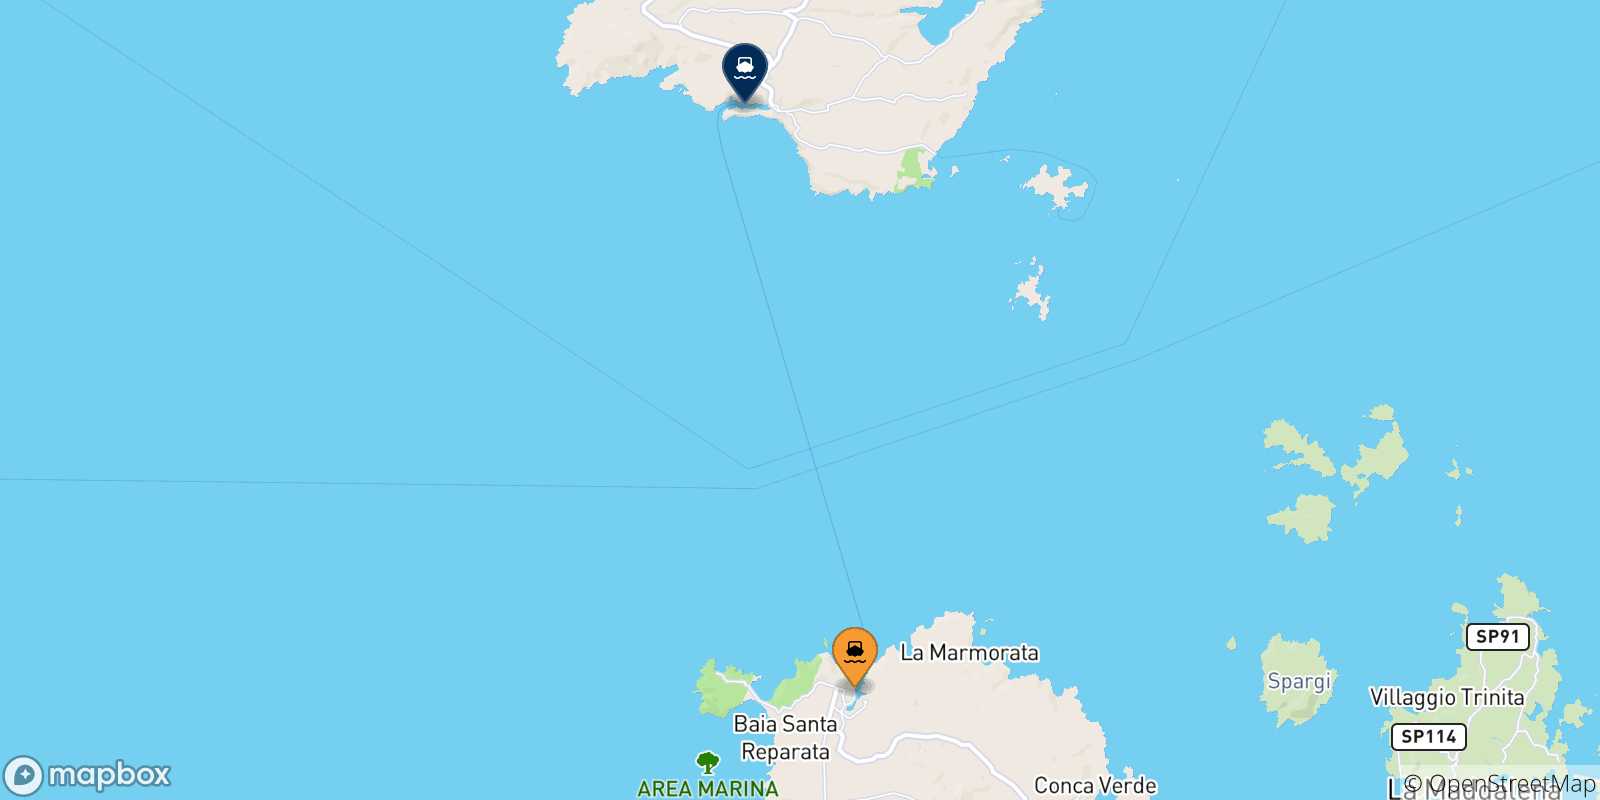 Mappa delle possibili rotte tra la Sardegna e Bonifacio